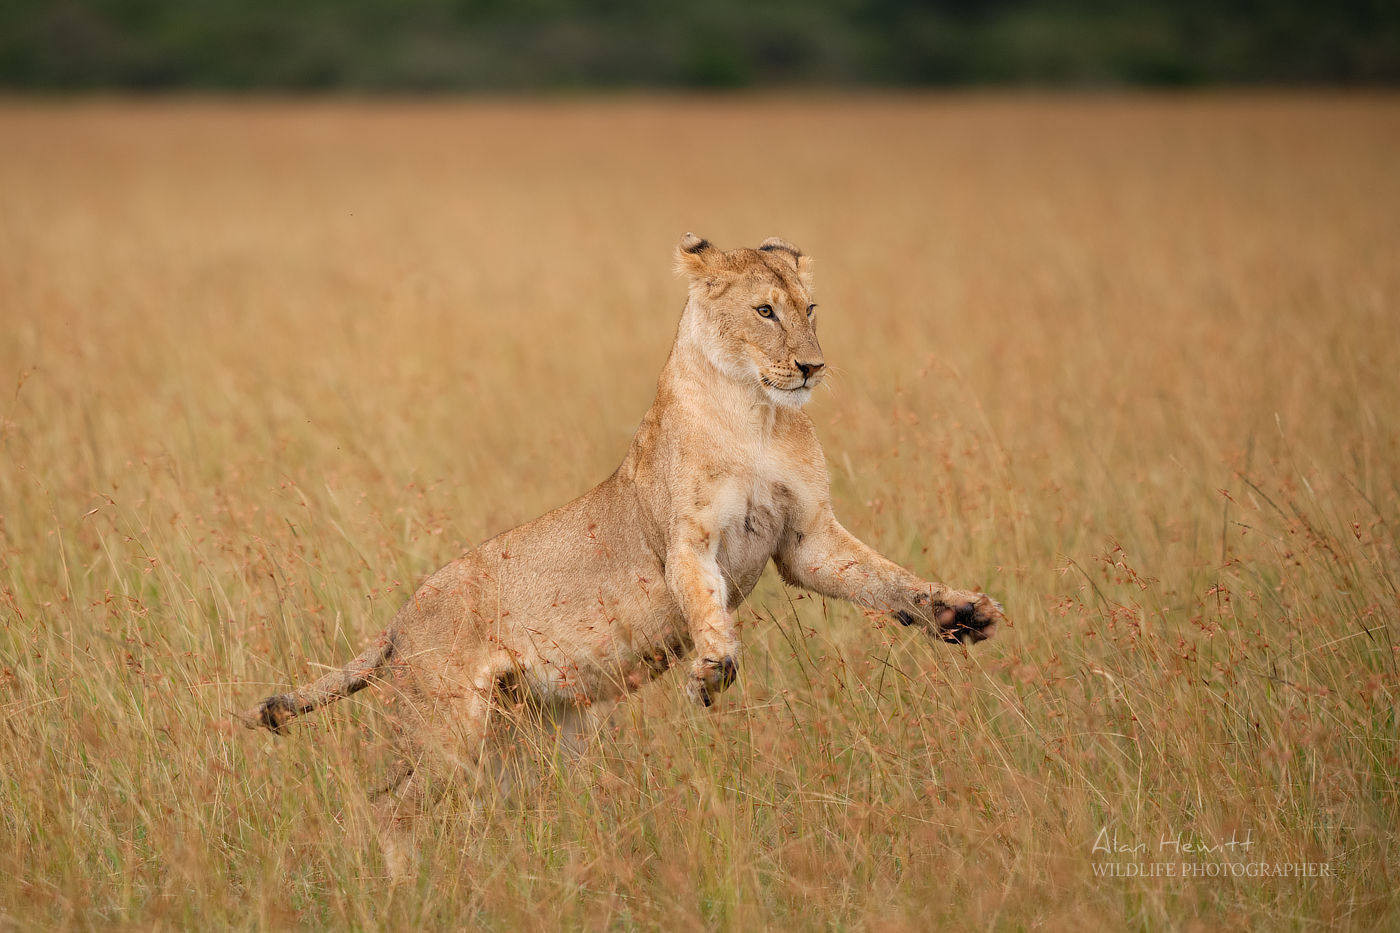 Lioness © Alan Hewitt Photography